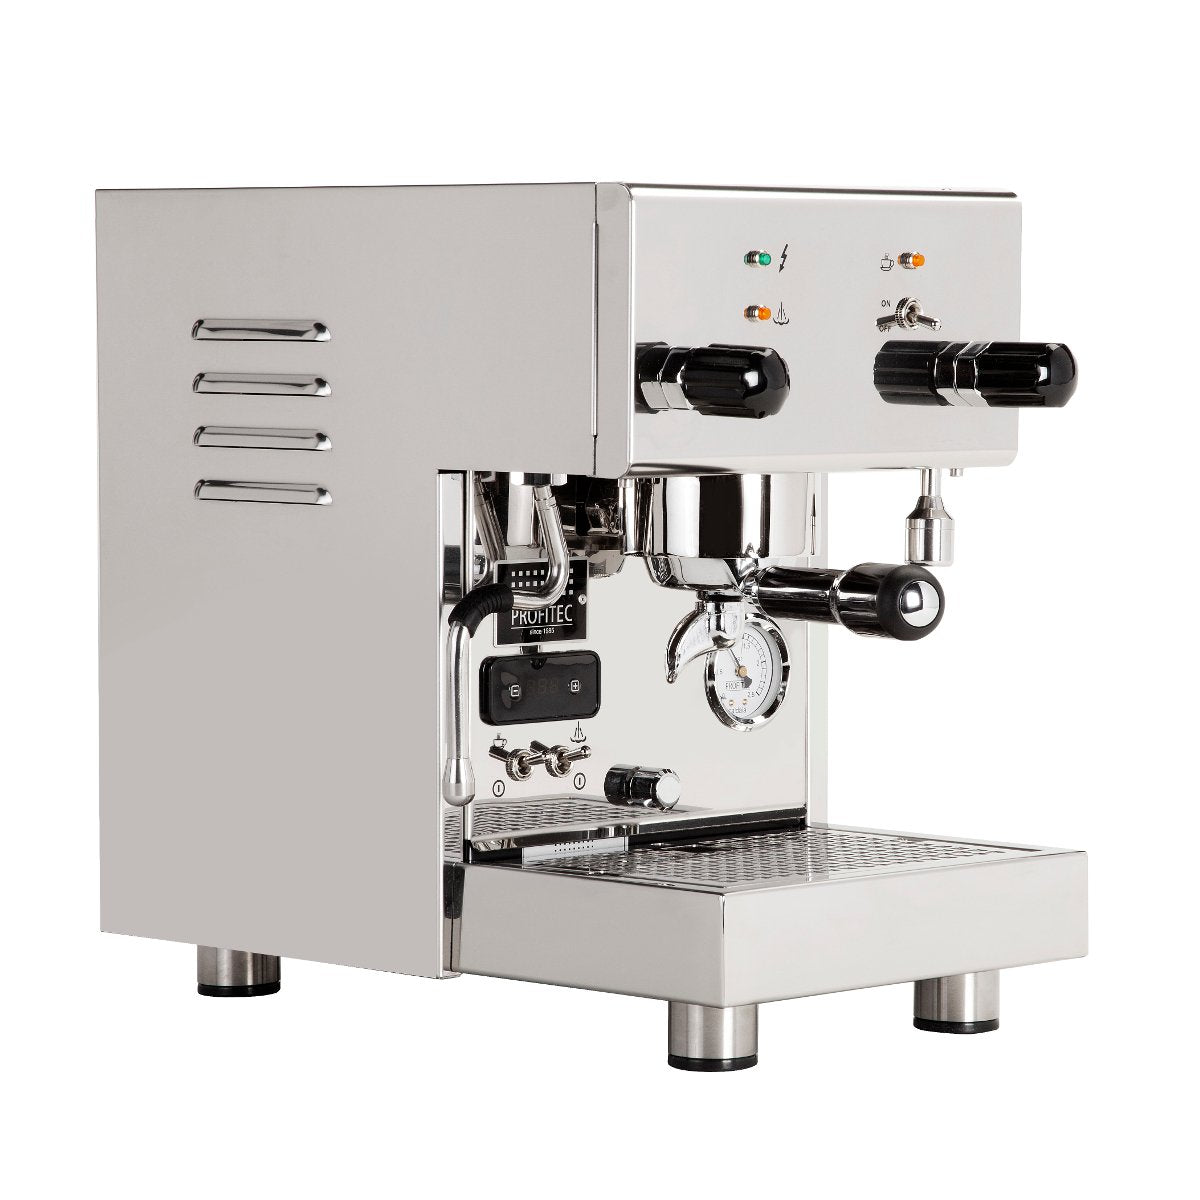 Profitec Pro 300 Dual Boiler Espresso Machine - Profile